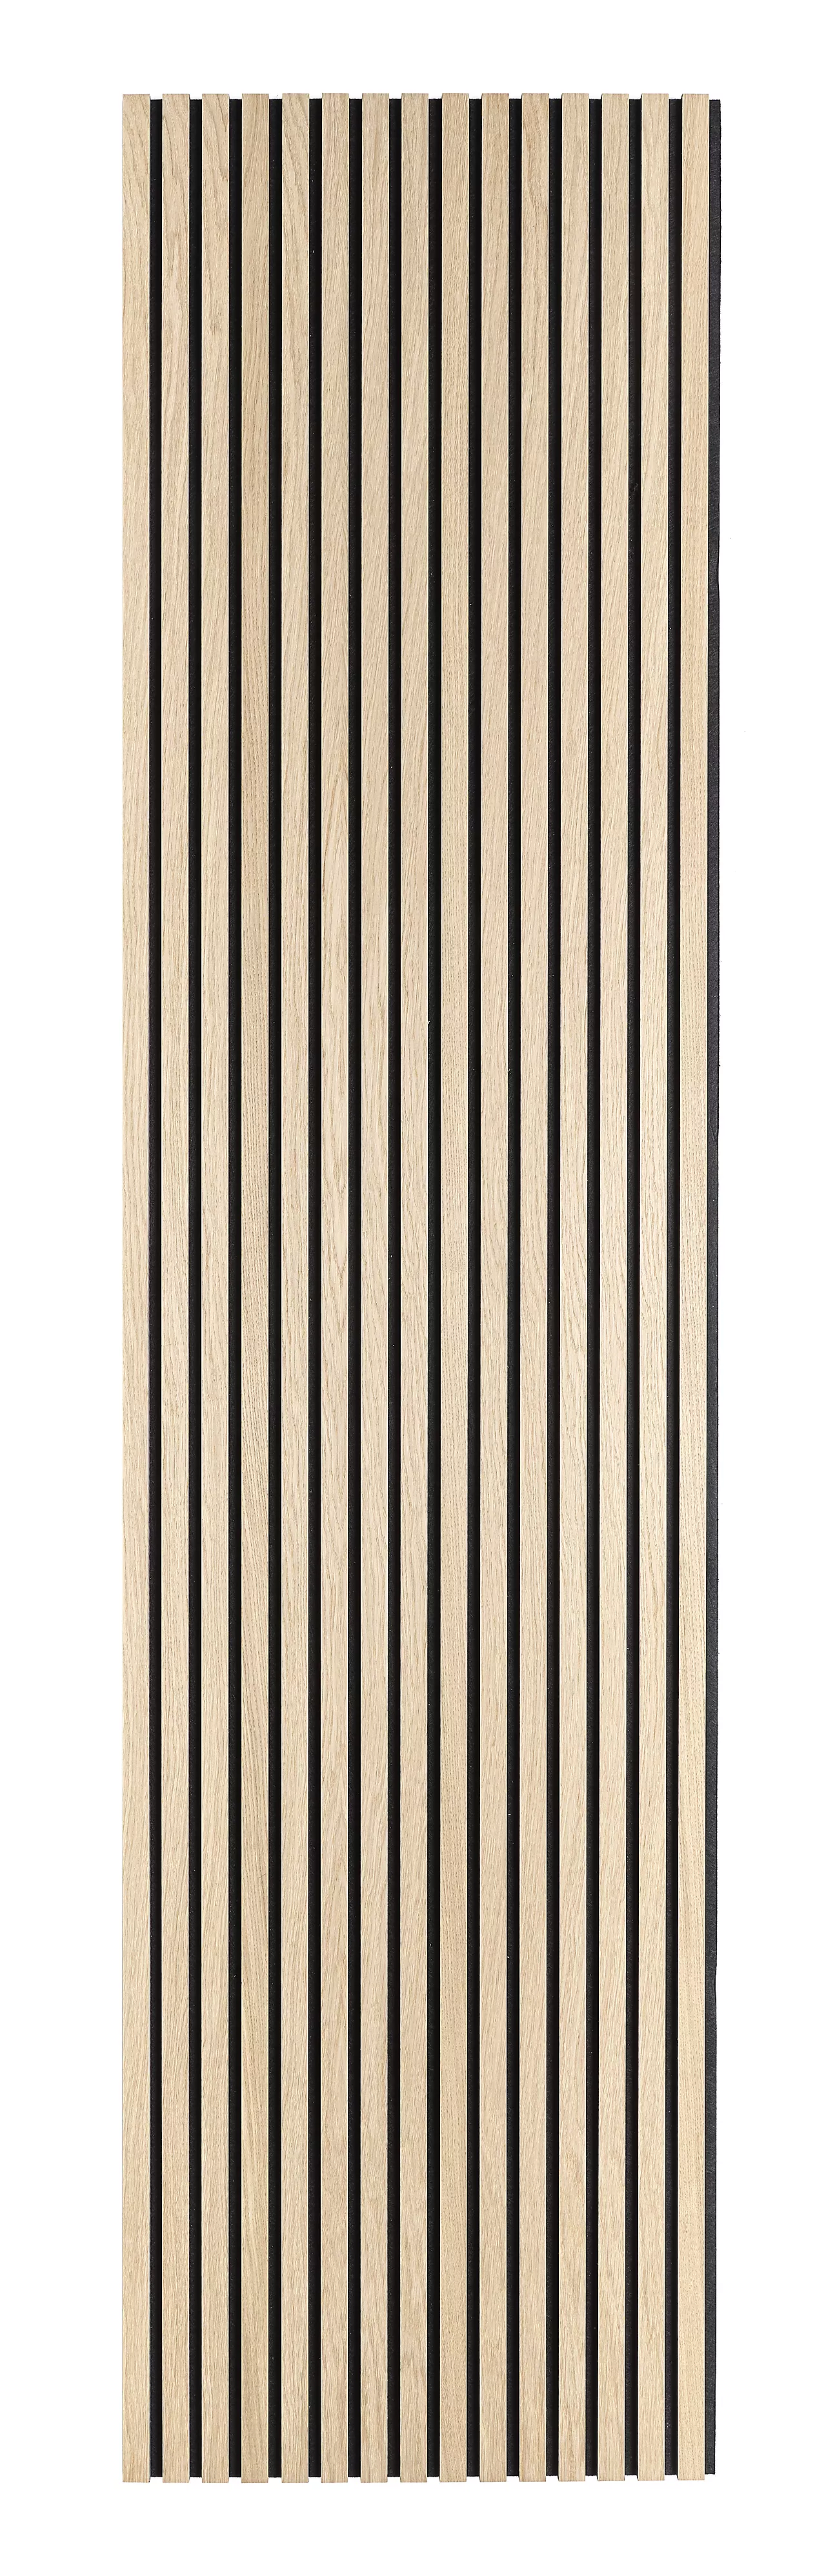 Panel eik ubeh (fsc)-2400 svart kjerne, svart filt, 2400x600